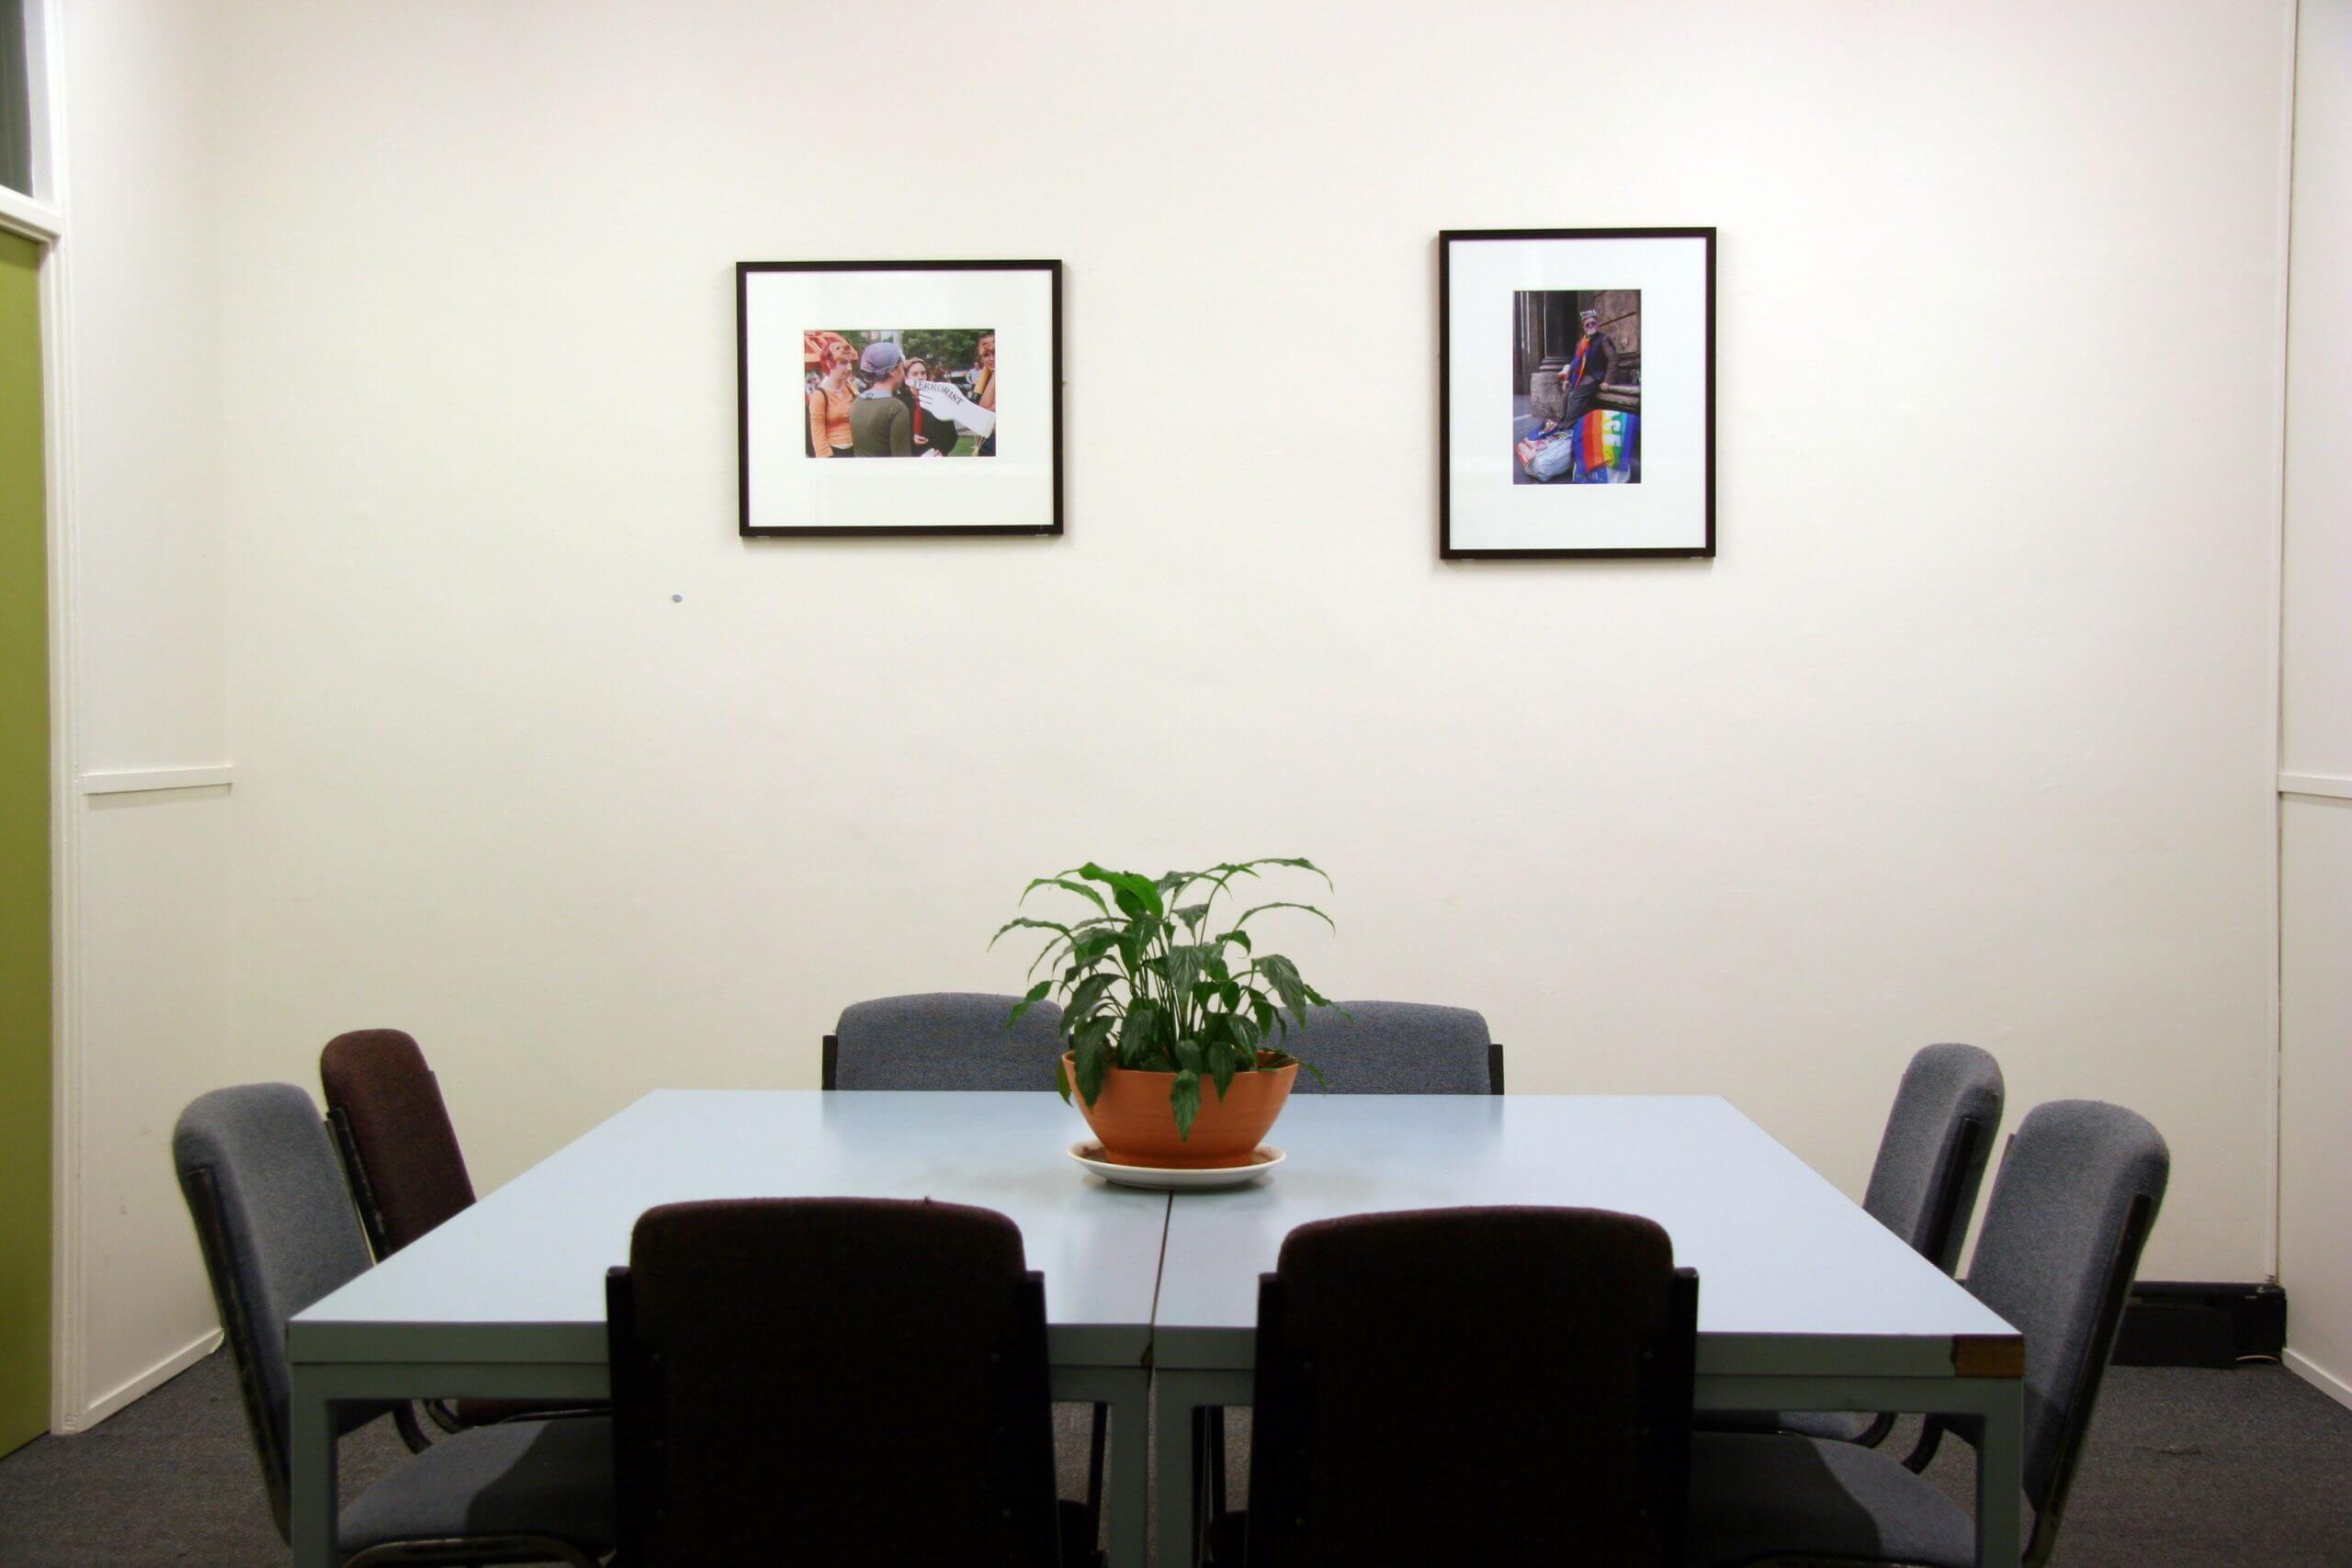 1.2 – Meeting Room